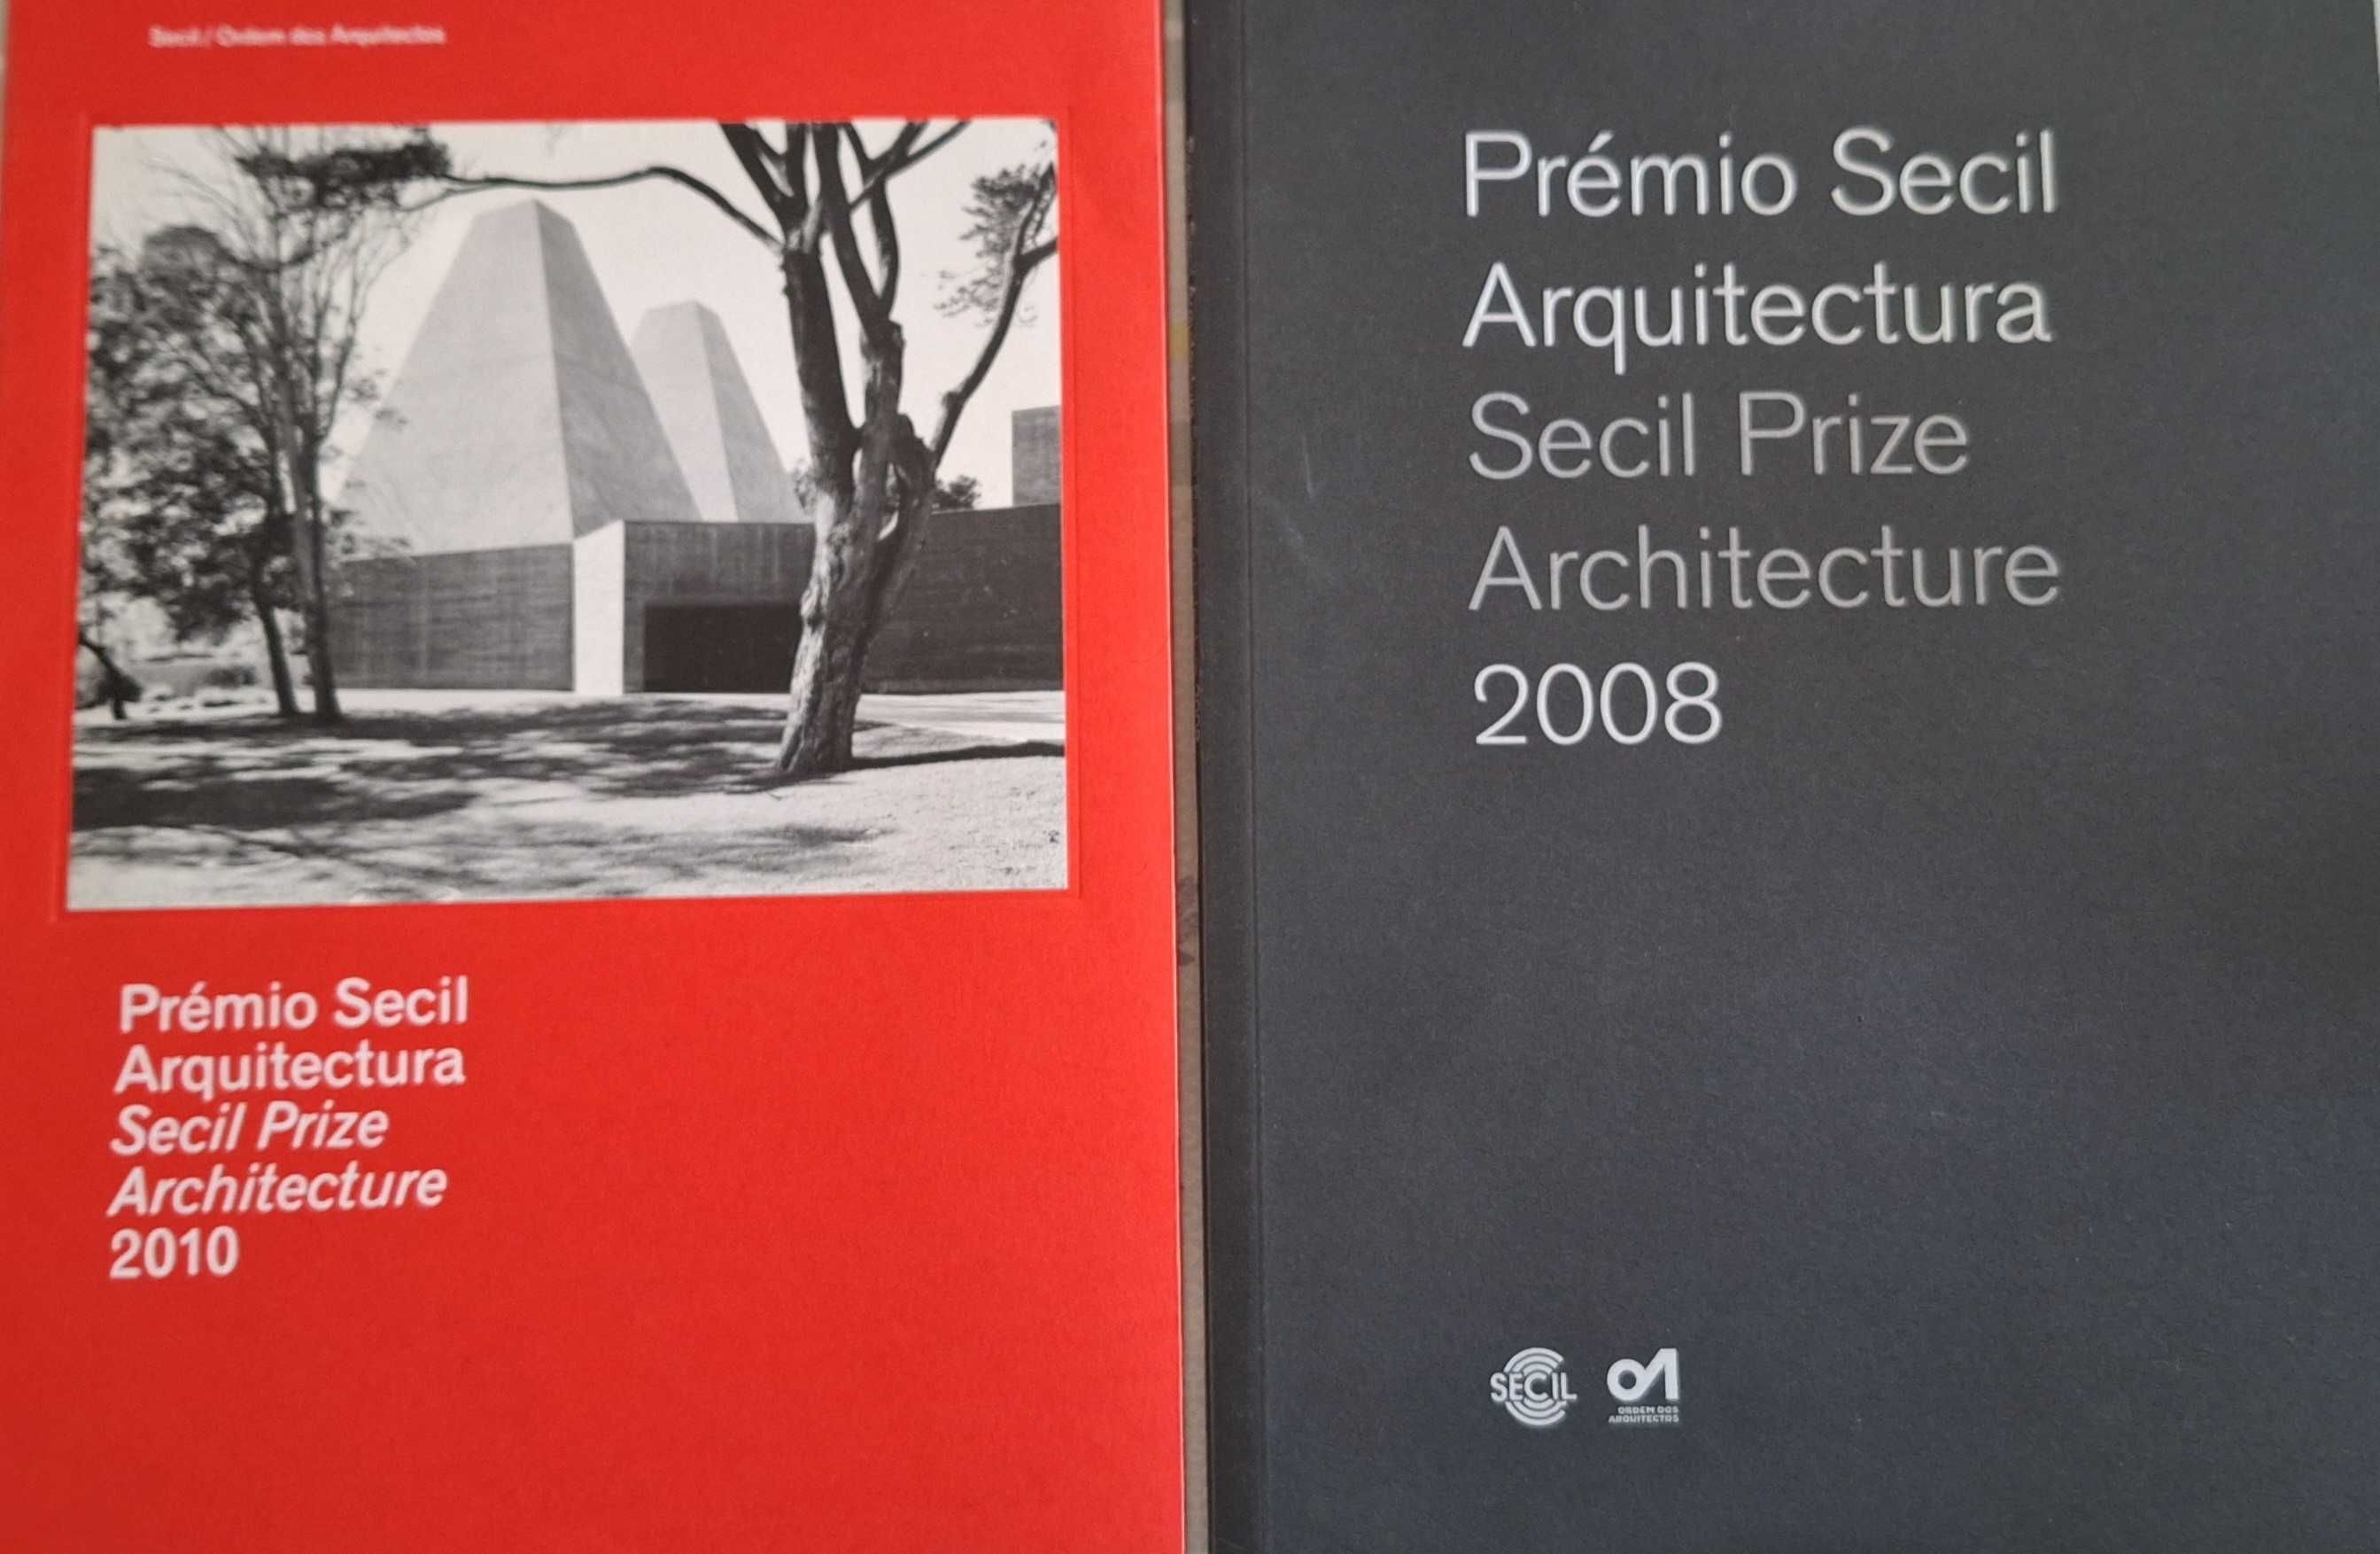 Prémio Secil de Arquitetura 2008 e 2010